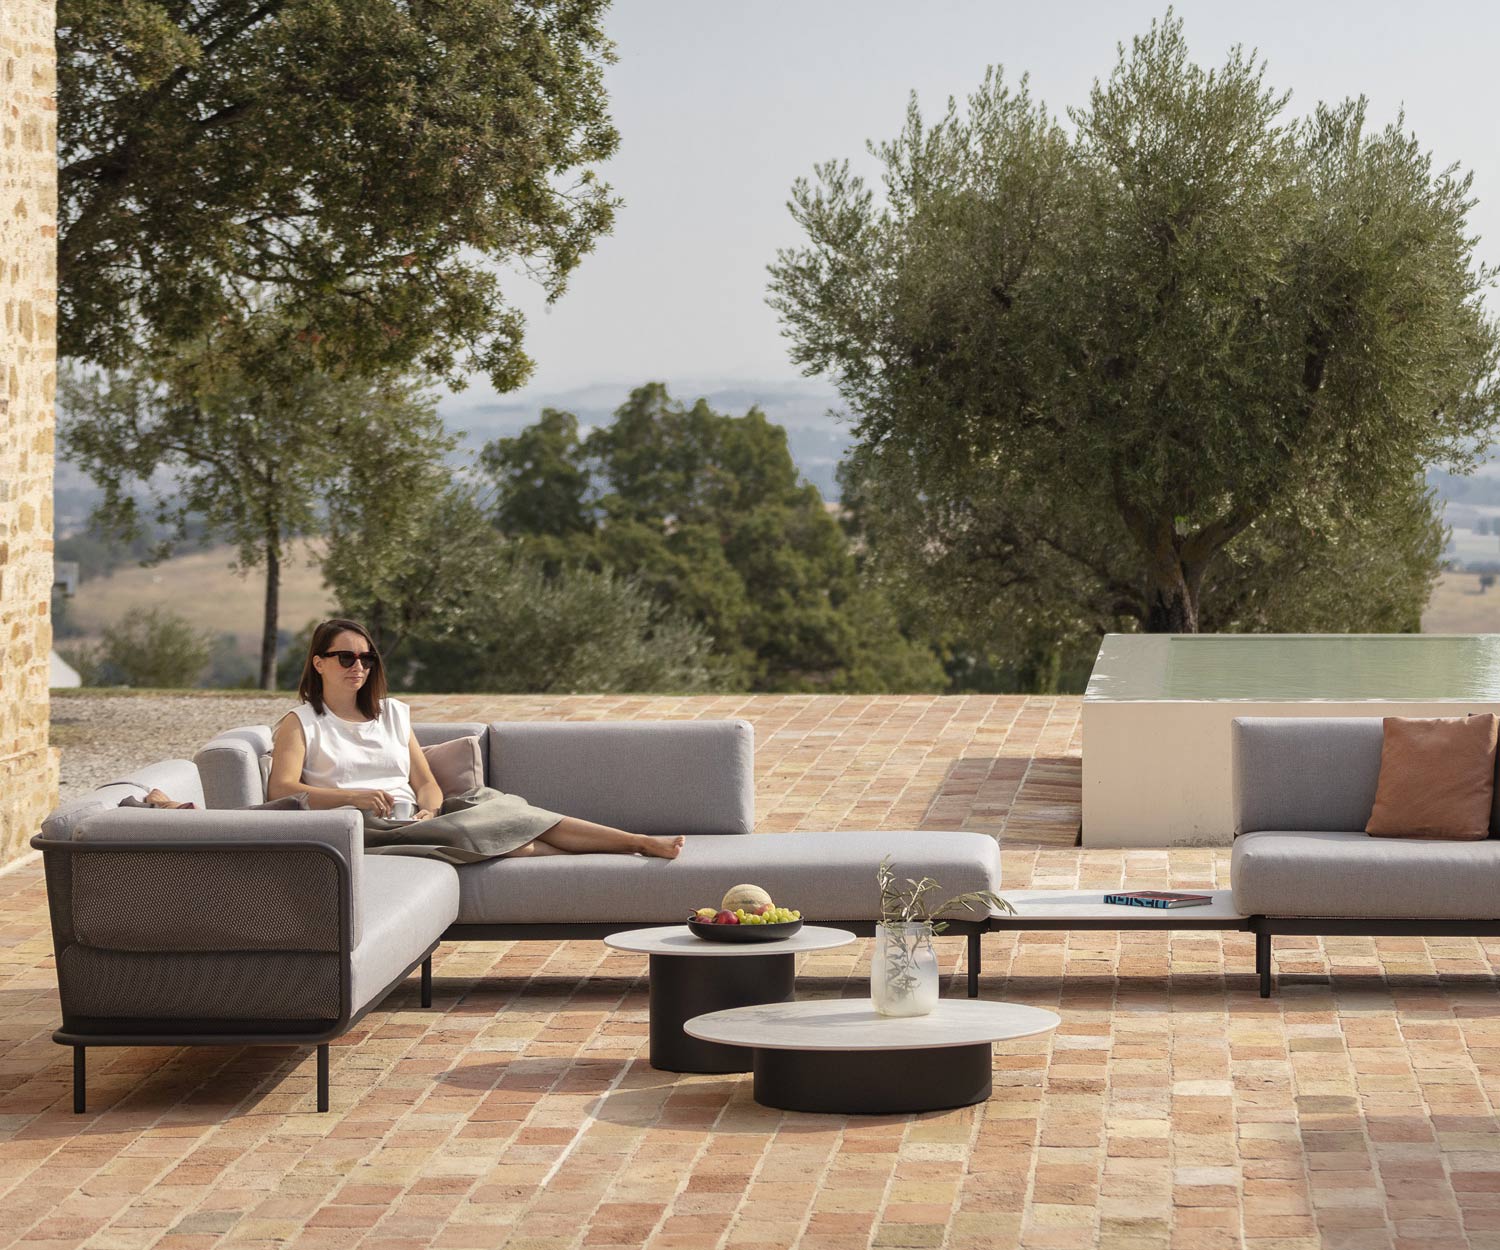 Il tavolino Branta Design è un compagno ideale per i divani in terrazza, balcone o veranda.